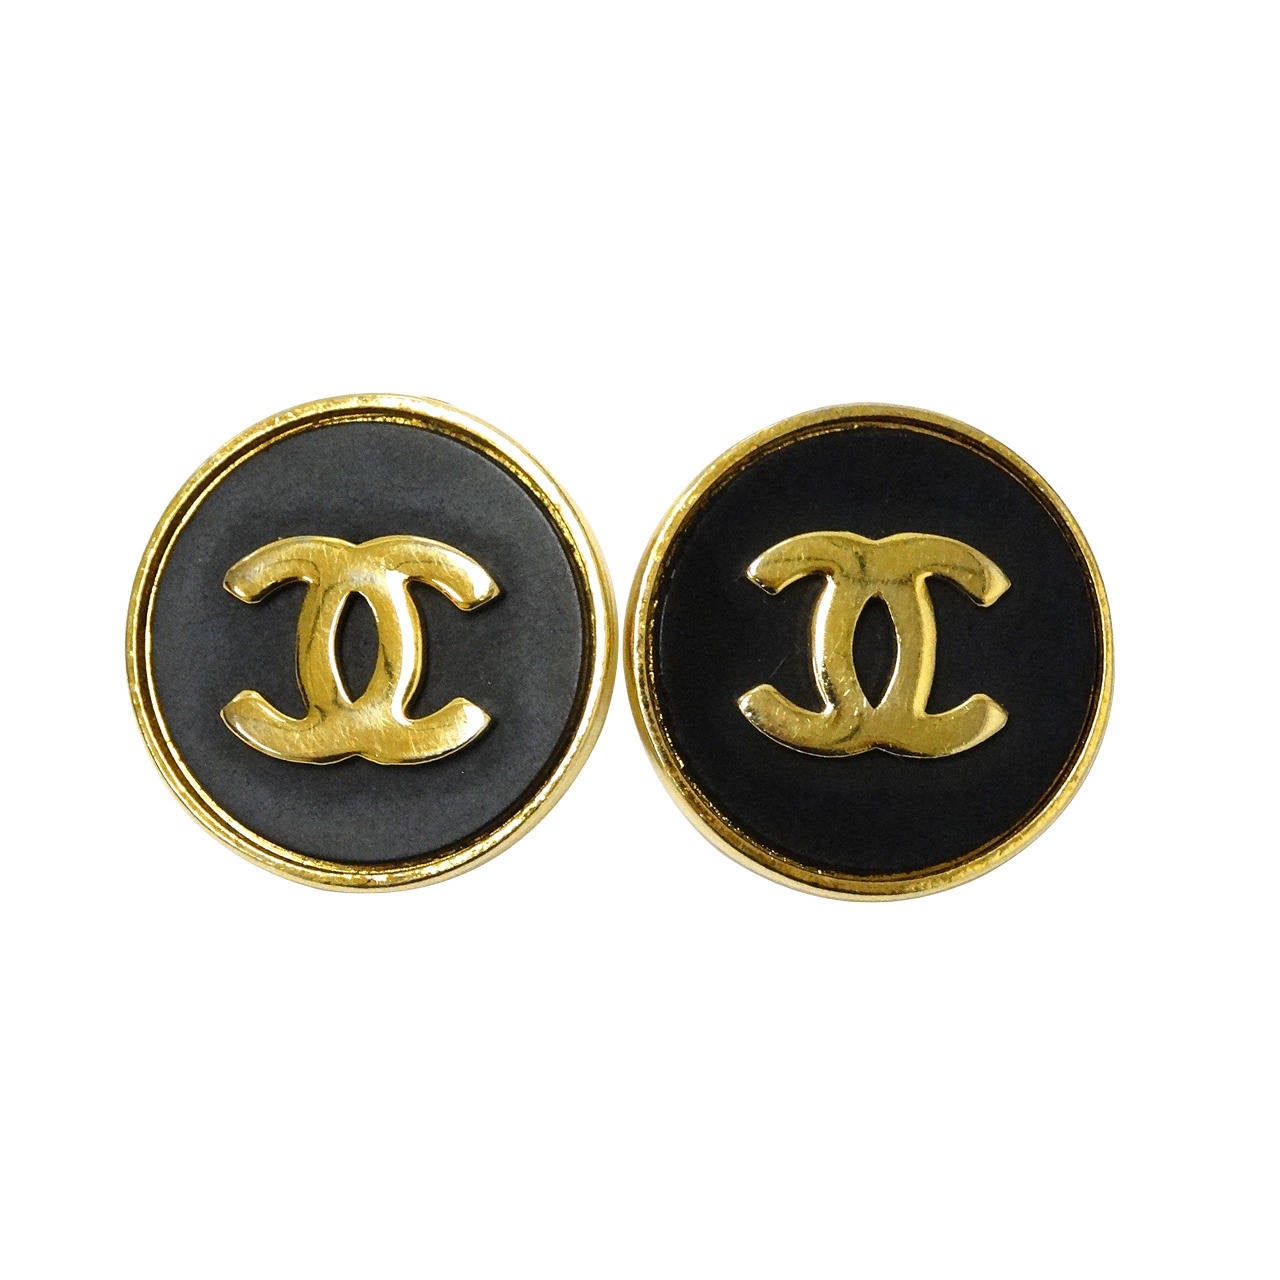 1980's Chanel Vintage Black & Goldtone Cuff Links